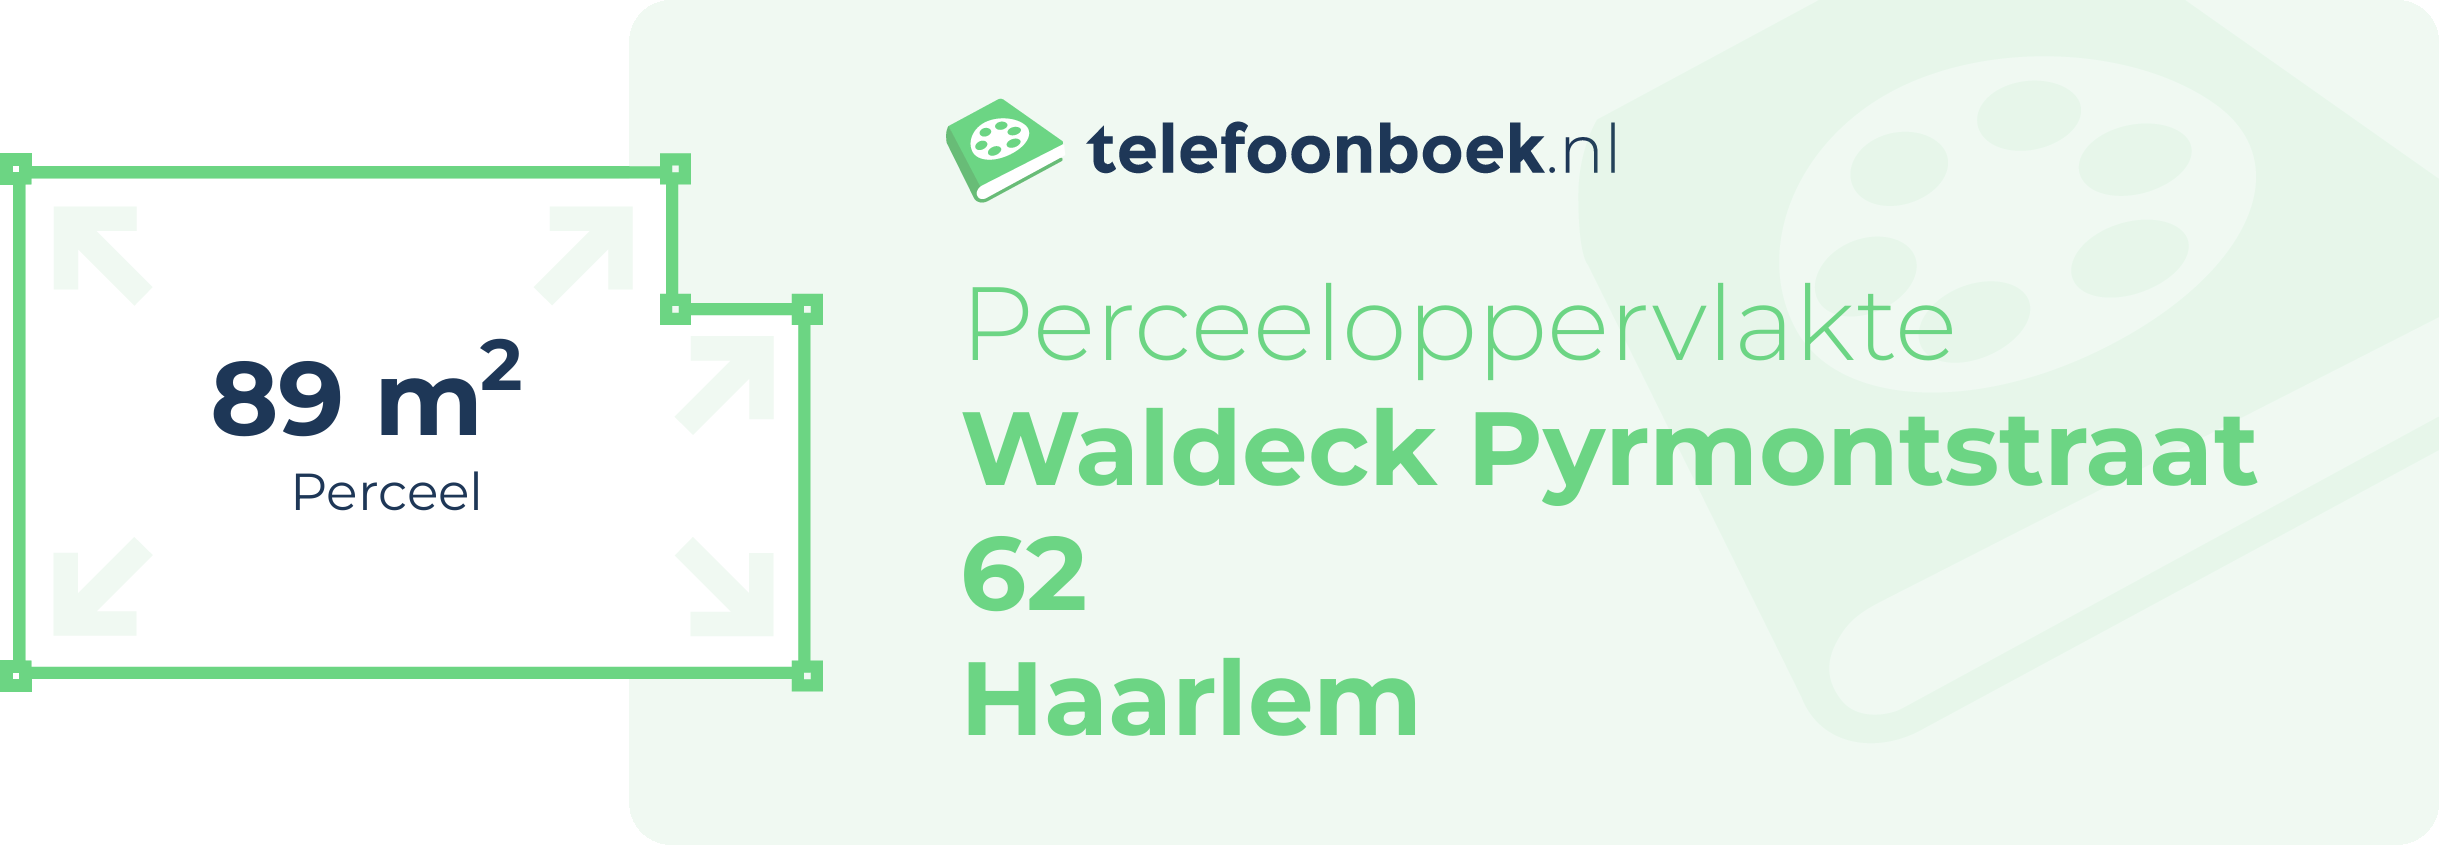 Perceeloppervlakte Waldeck Pyrmontstraat 62 Haarlem